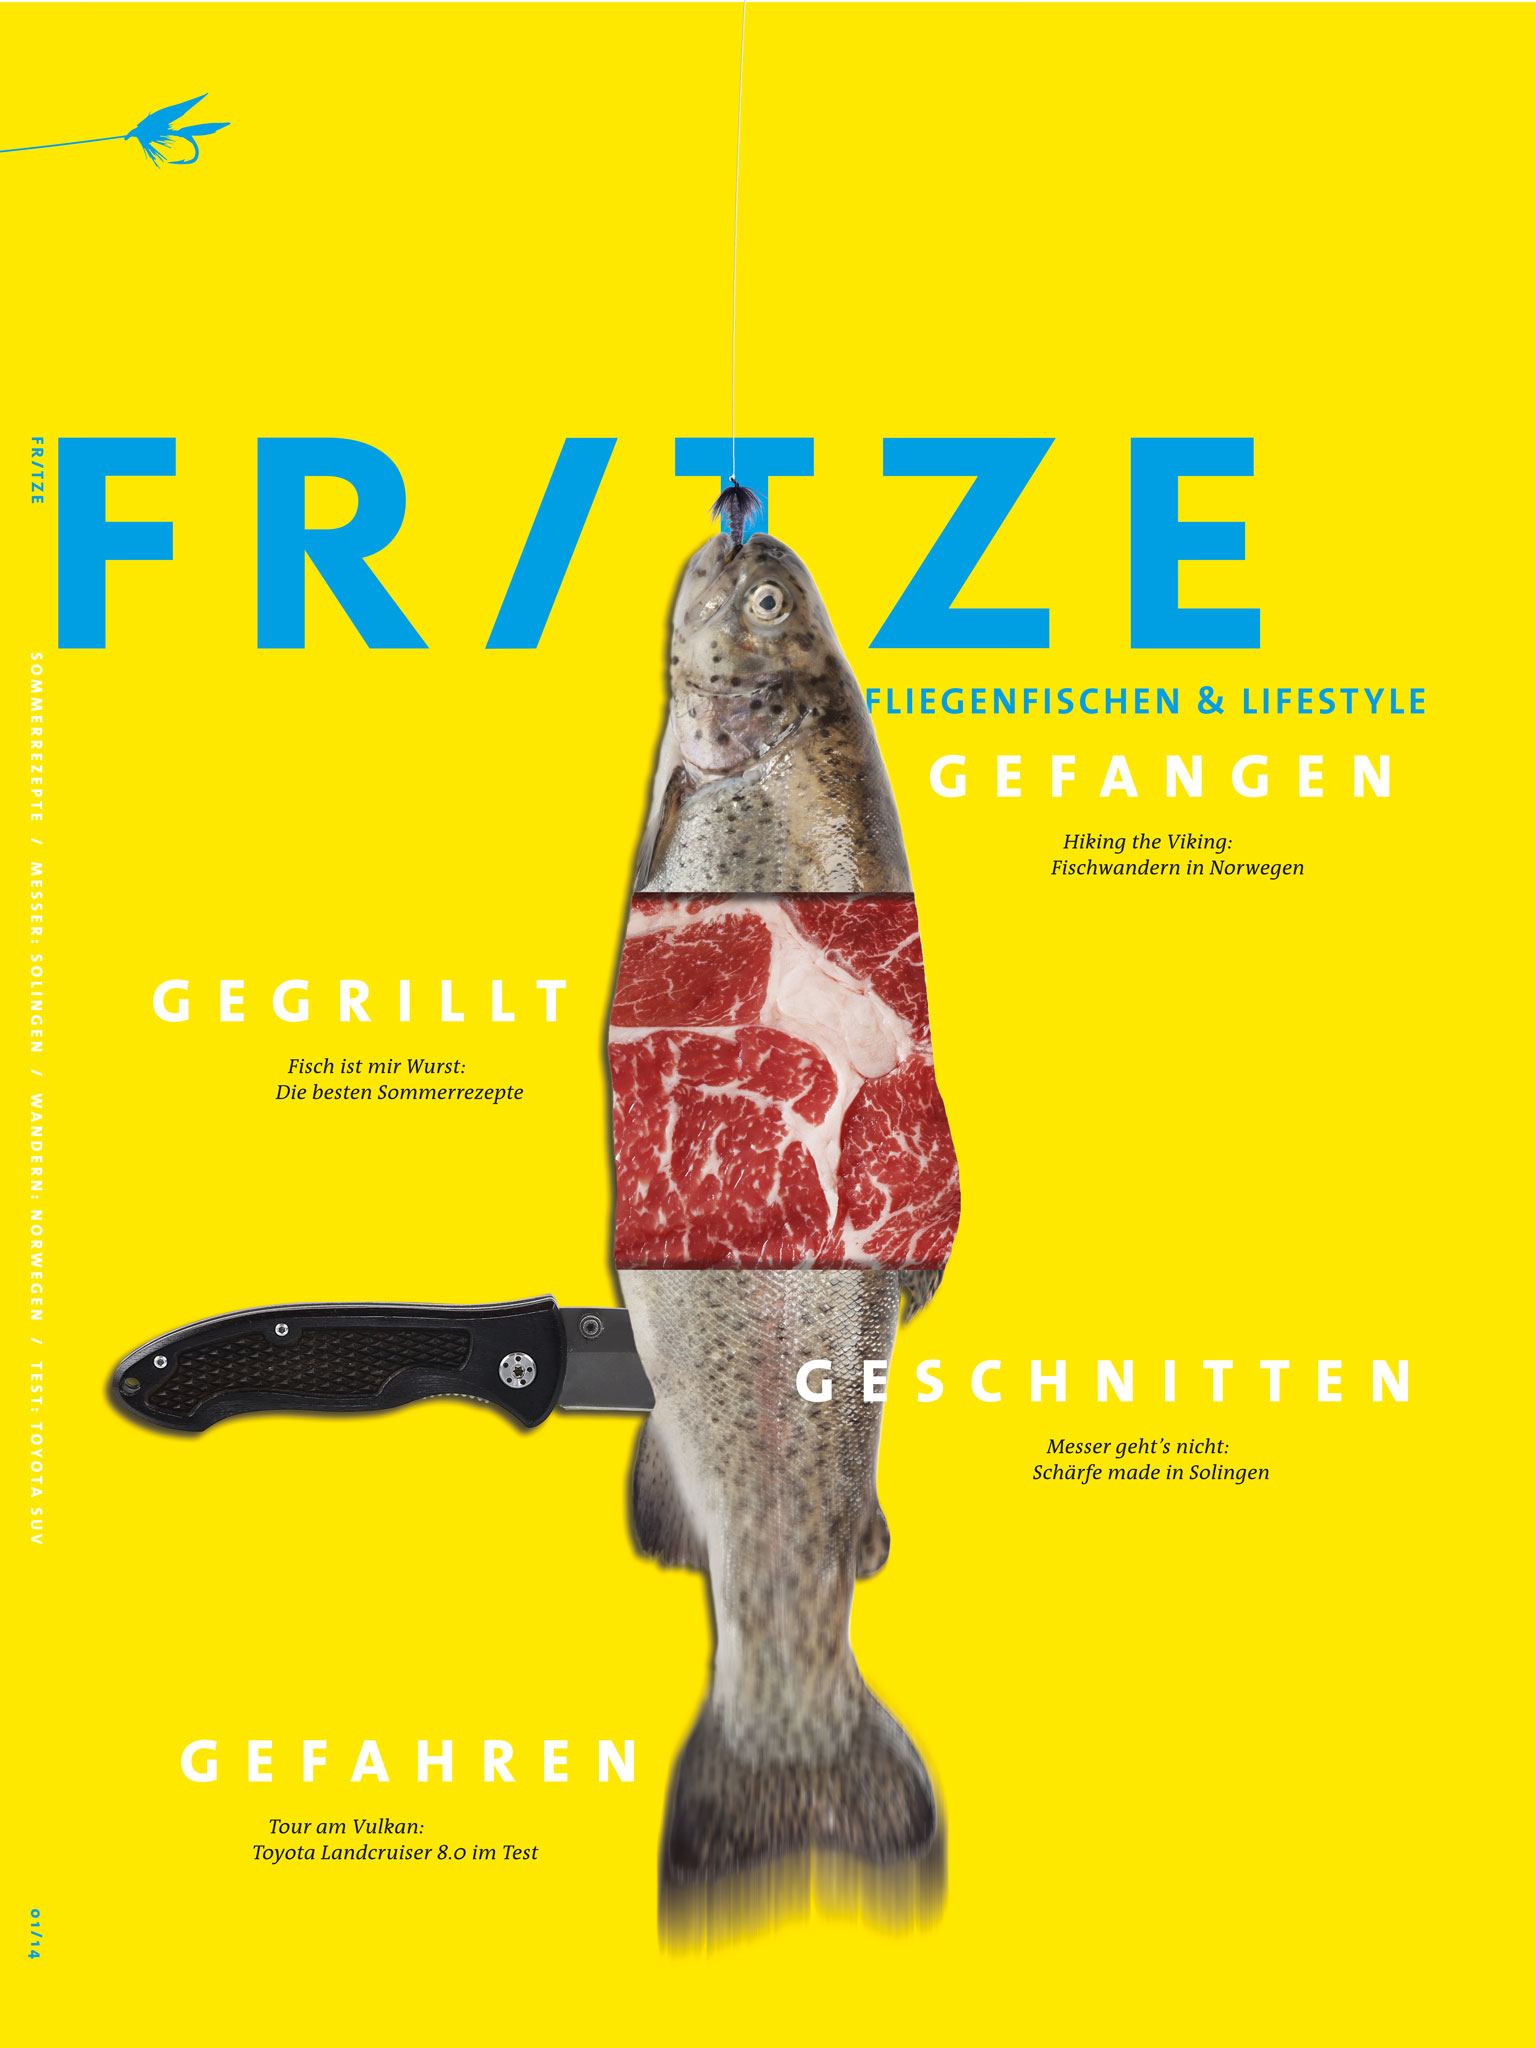 Hilmar-Korth-Kommunikationsdesign-Koeln-Editorial-Design-Männermagazin-Magazin-Fritze-Fliegenfischen-Cover